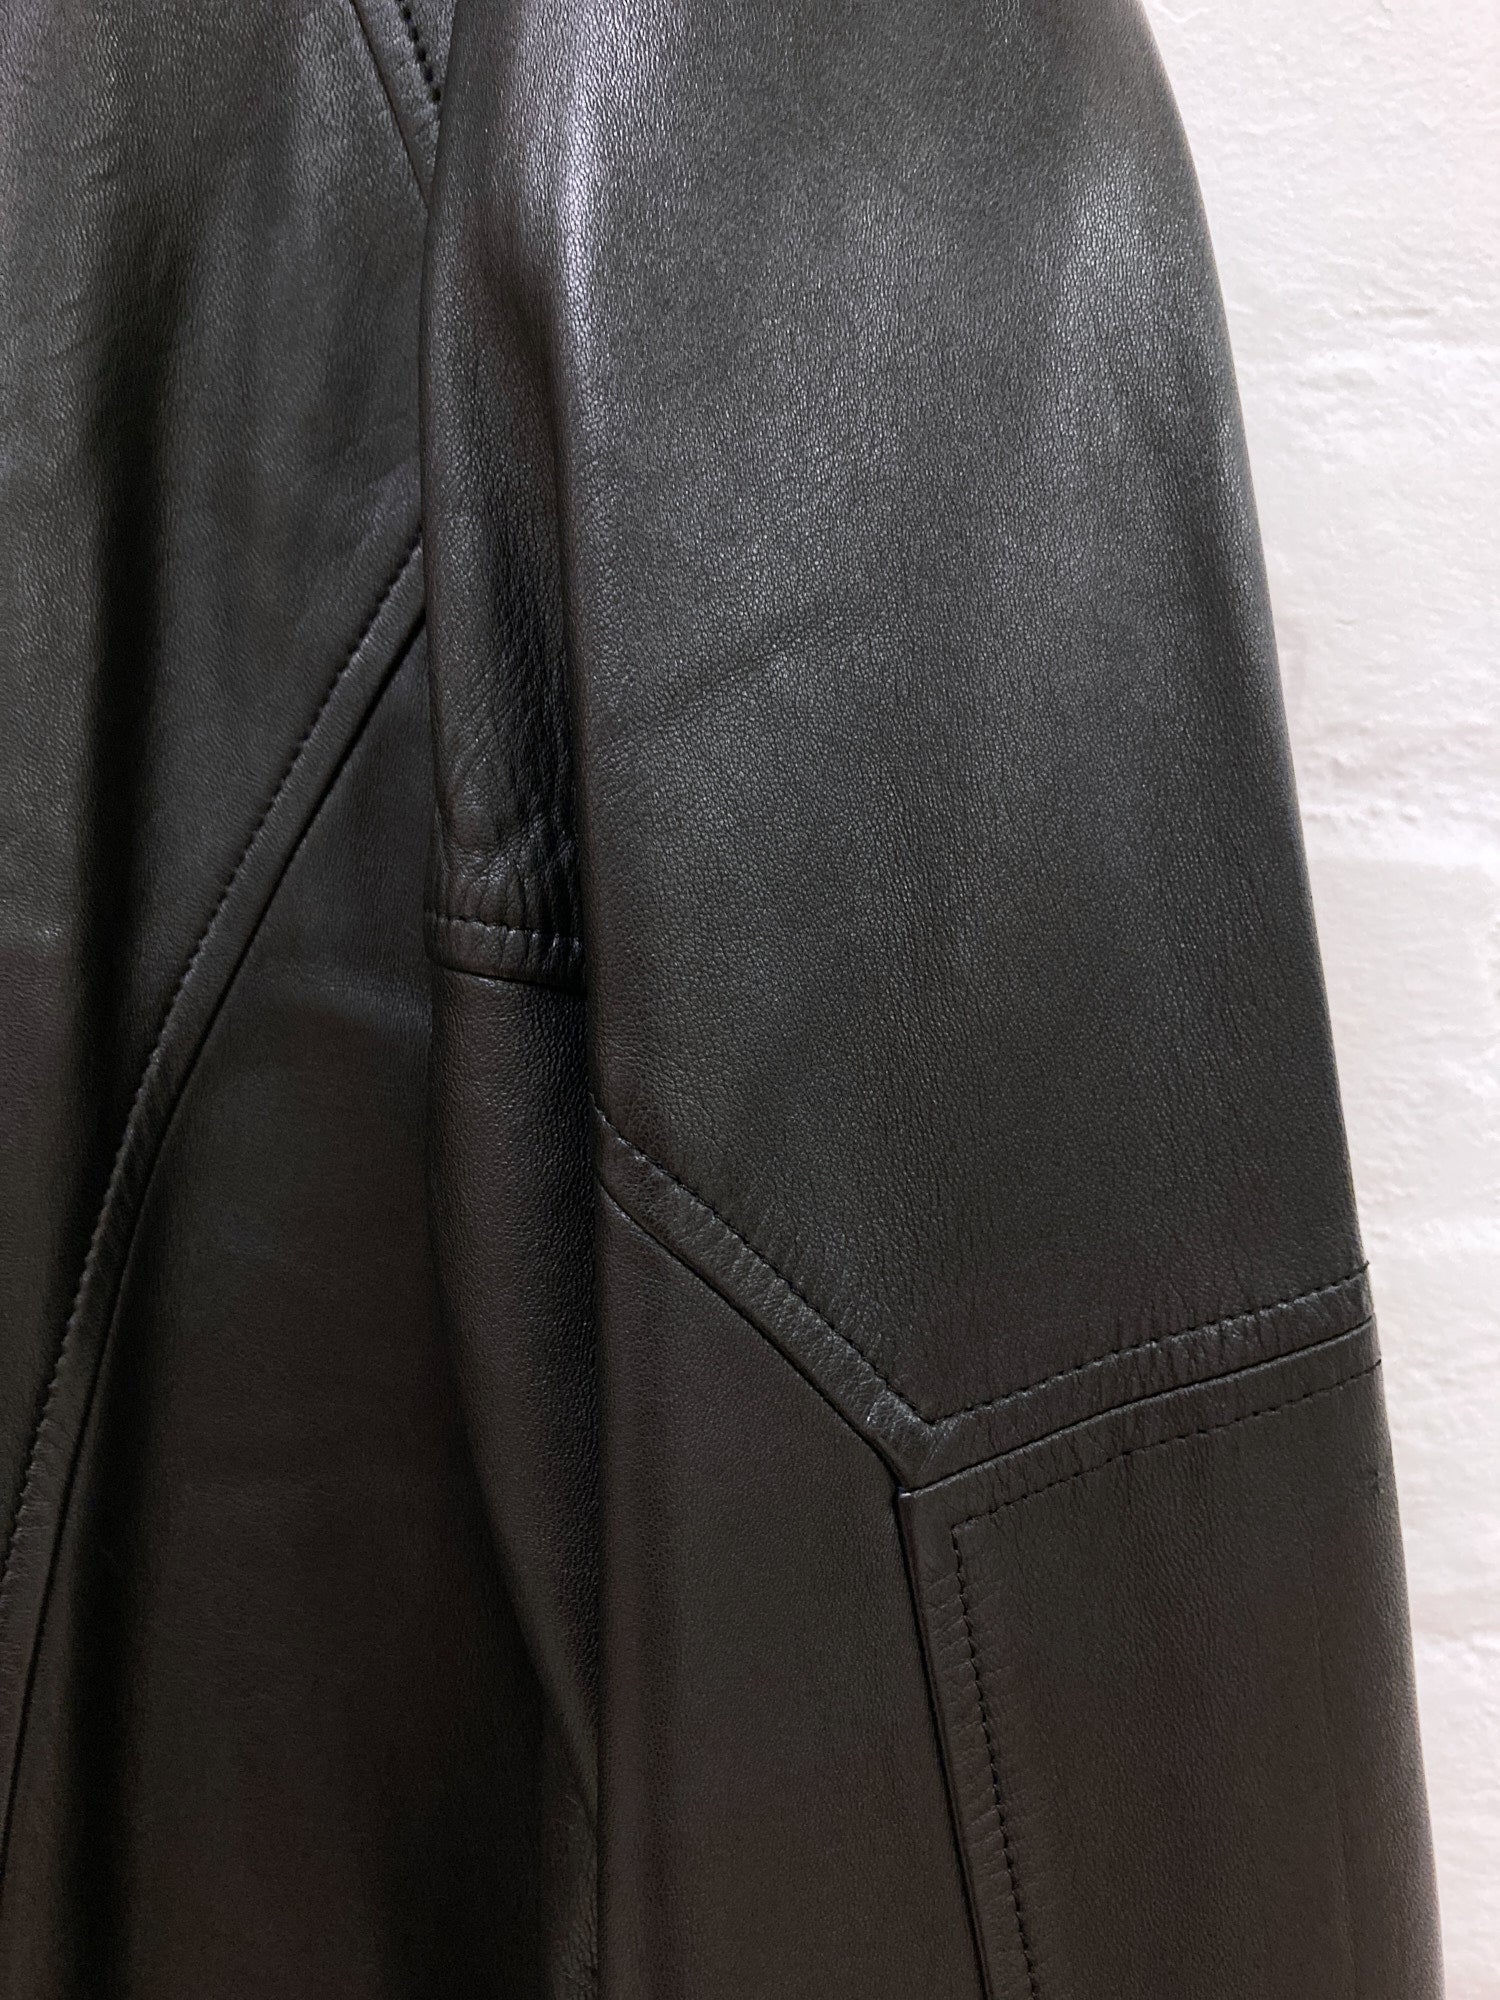 Lanvin Studio 1980s padded black paneled leather jacket - size 50